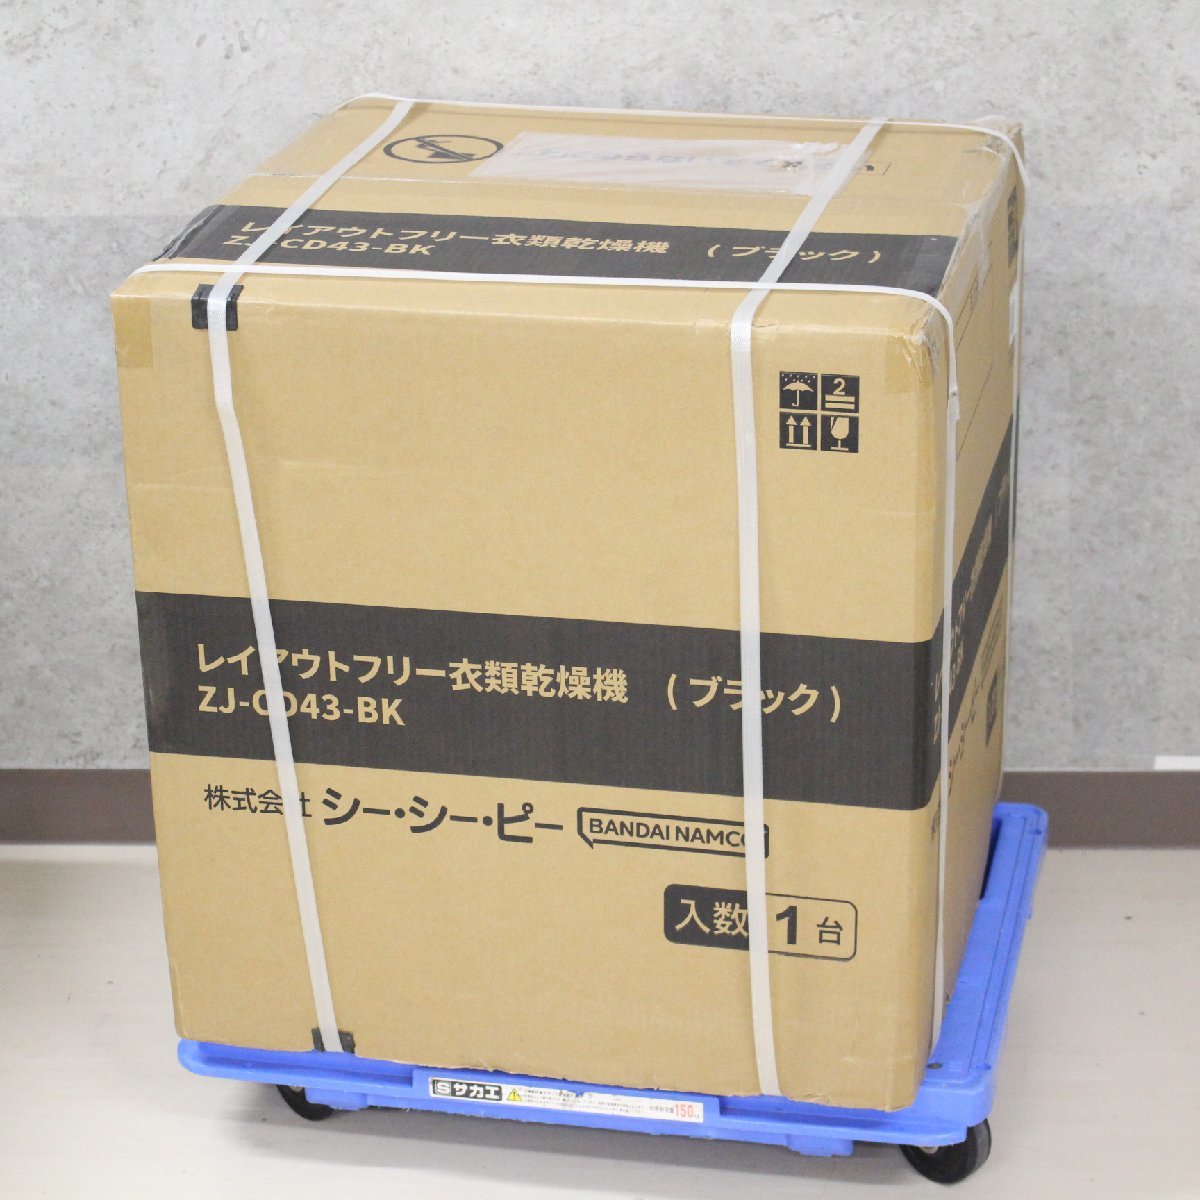 東京都中央区にて CCP レイアウトフリー衣類乾燥機 ZJ-CD43-BK  を出張買取させて頂きました。